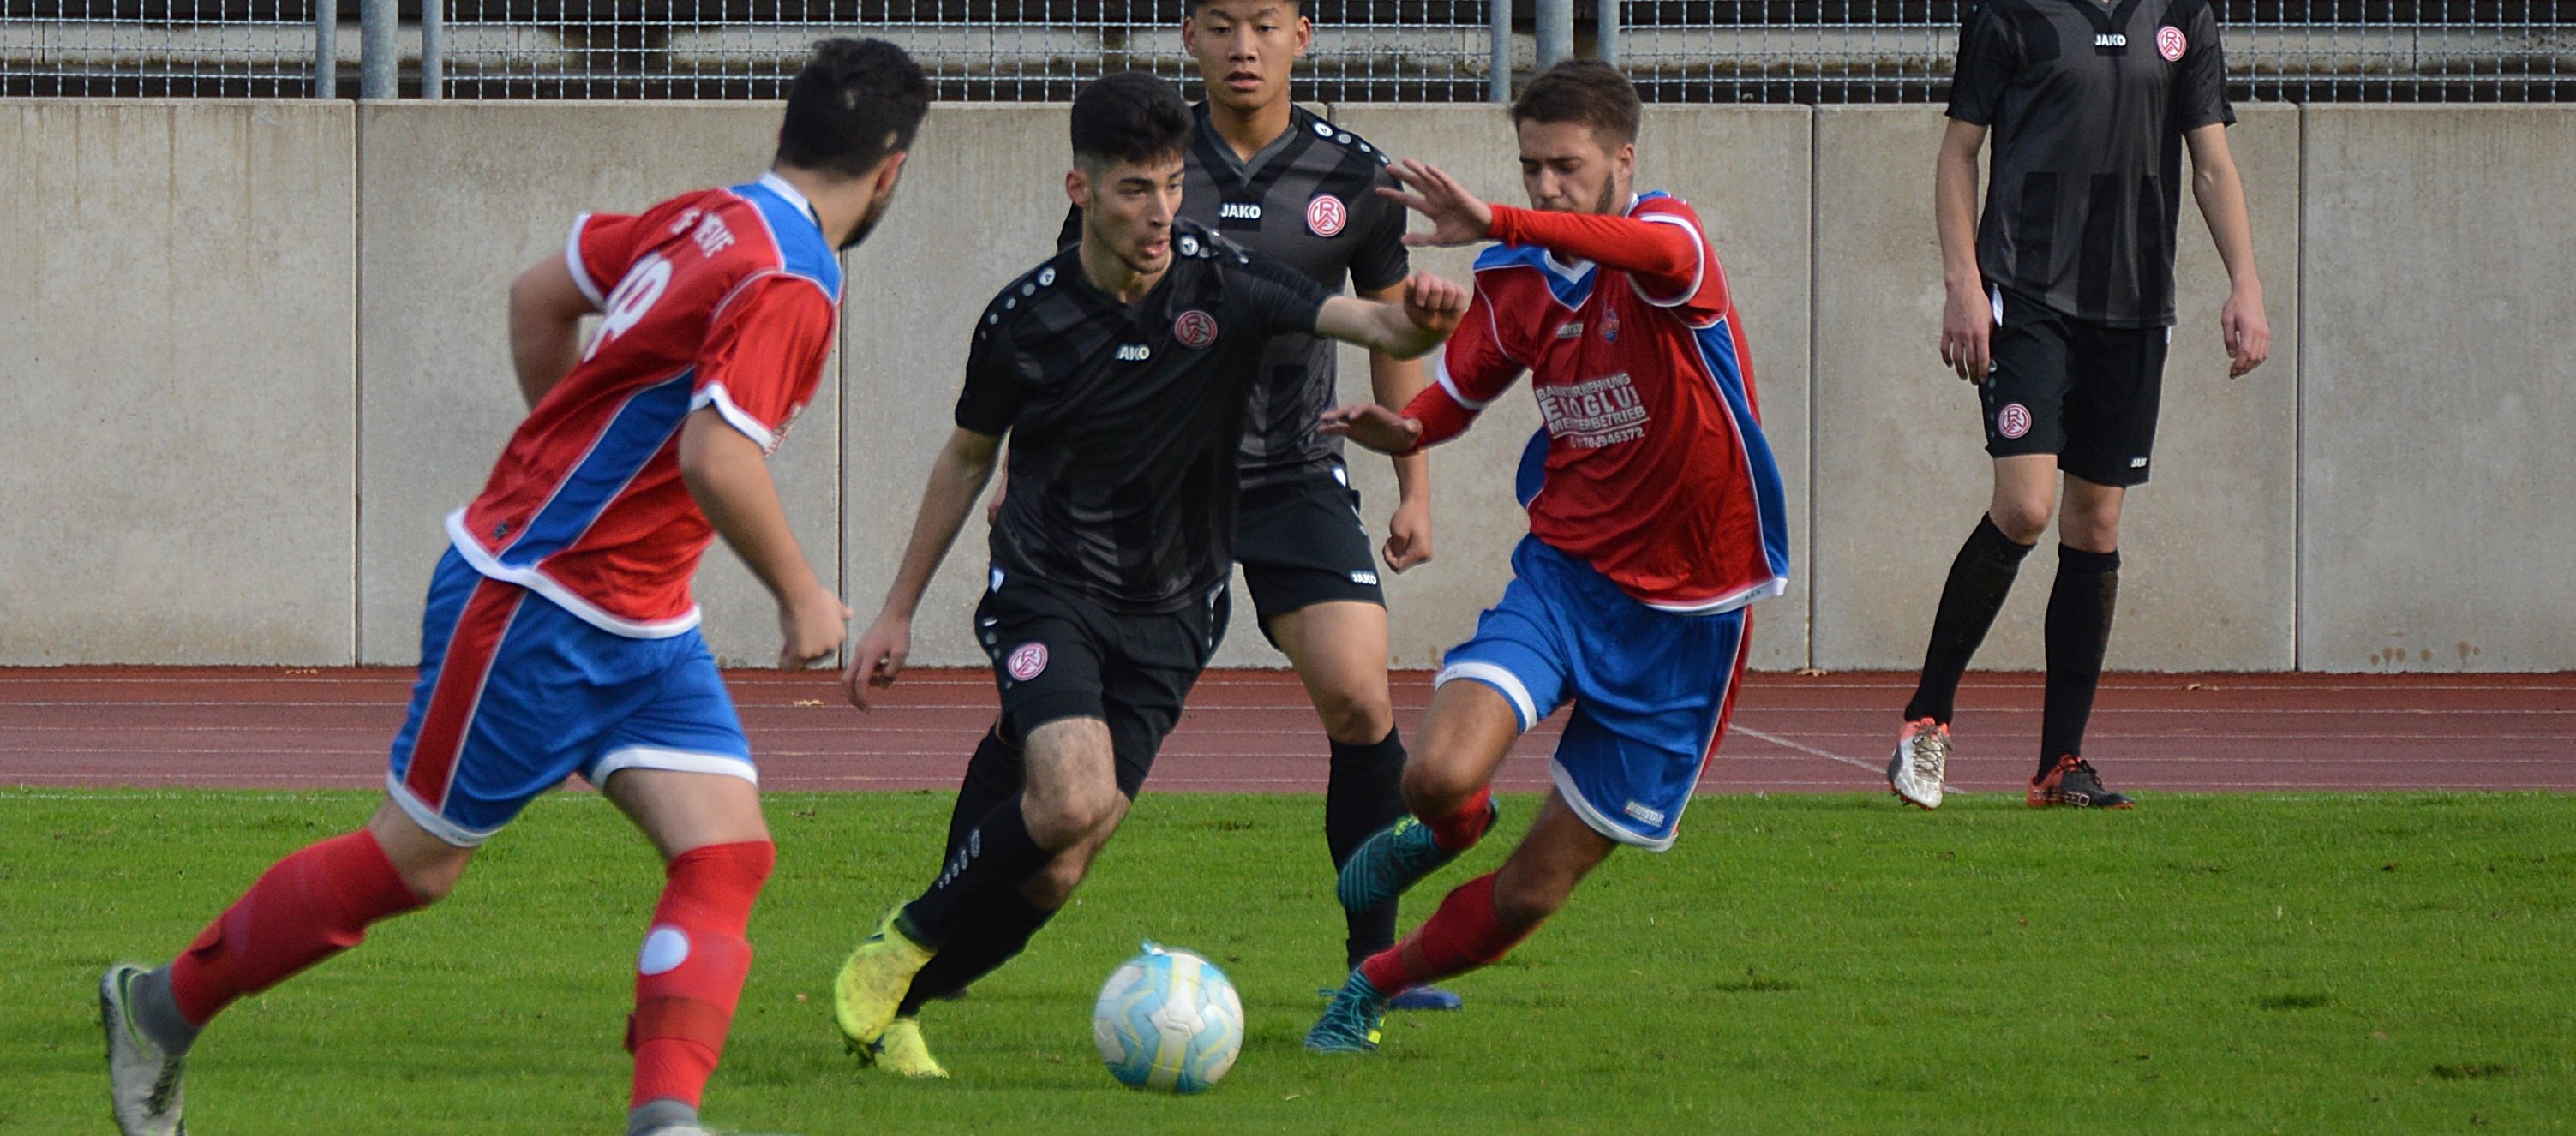 Die U19 von RWE konnte im Heimspiel gegen den 1. FC Kleve drei Punkte einfahren. (Foto: Skuppin)